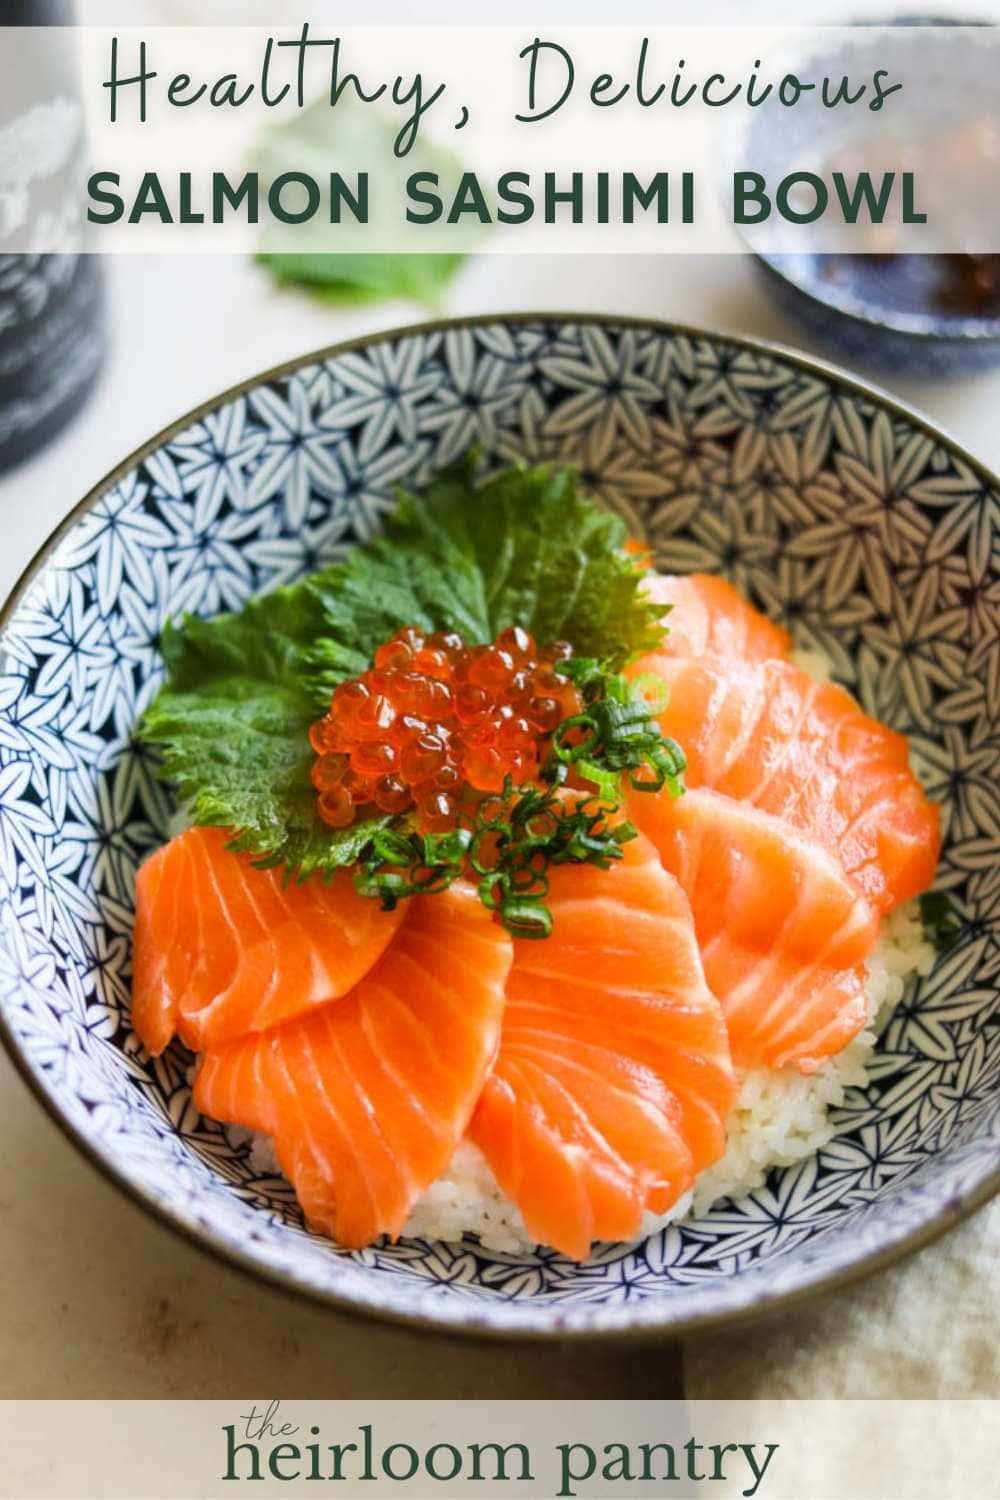 Salmon sashimi donburi rice bowl for Pinterest.